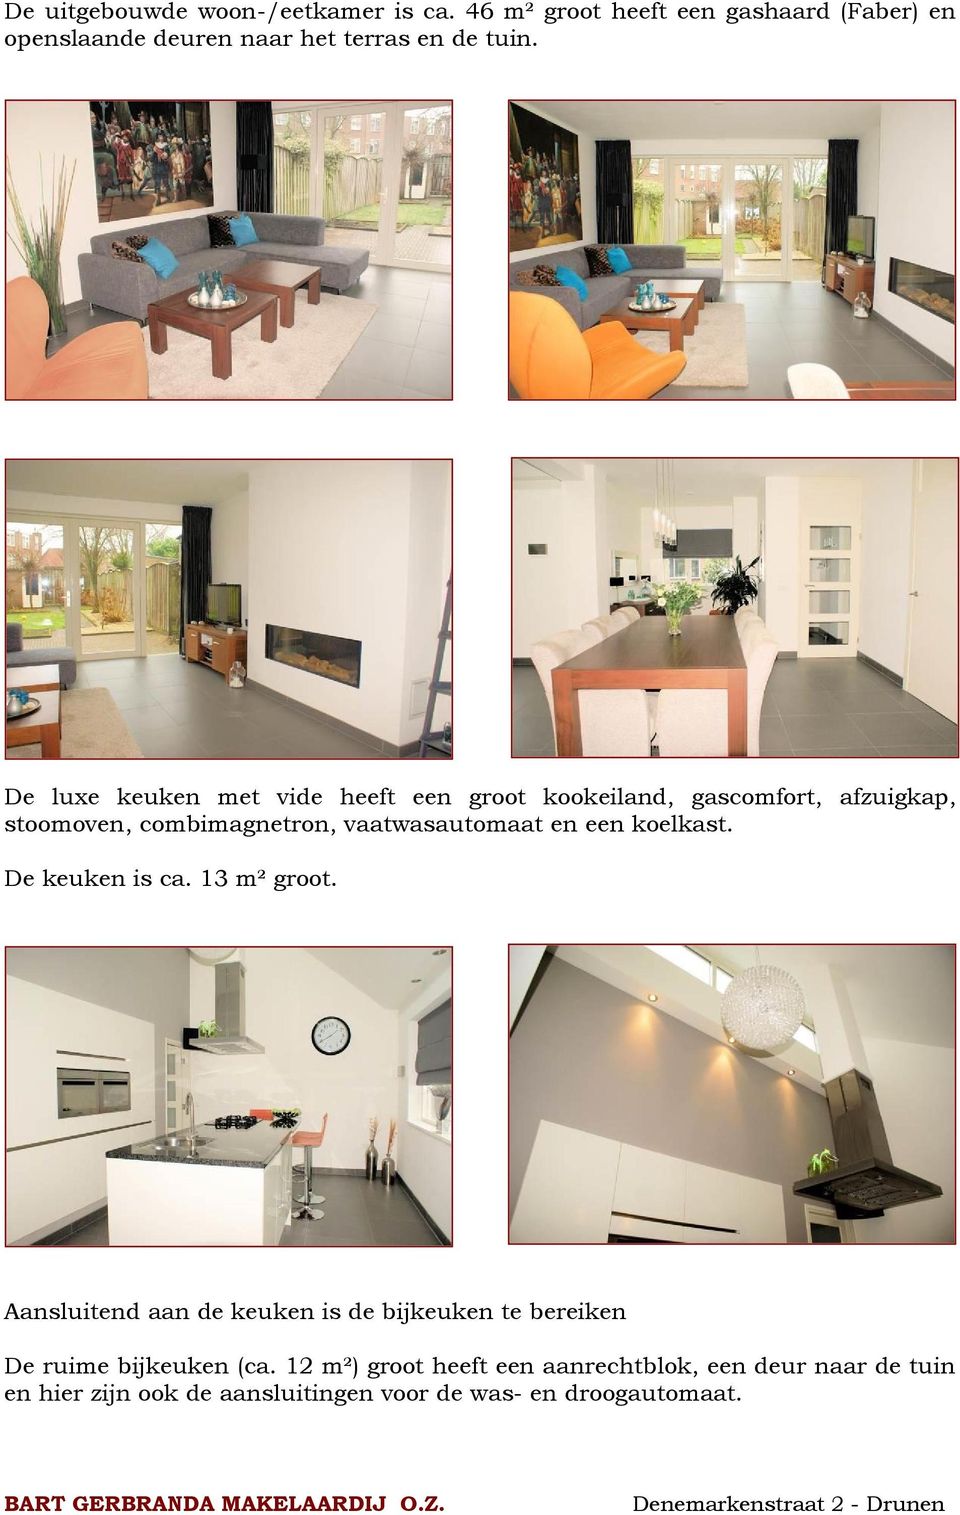 De luxe keuken met vide heeft een groot kookeiland, gascomfort, afzuigkap, stoomoven, combimagnetron, vaatwasautomaat en